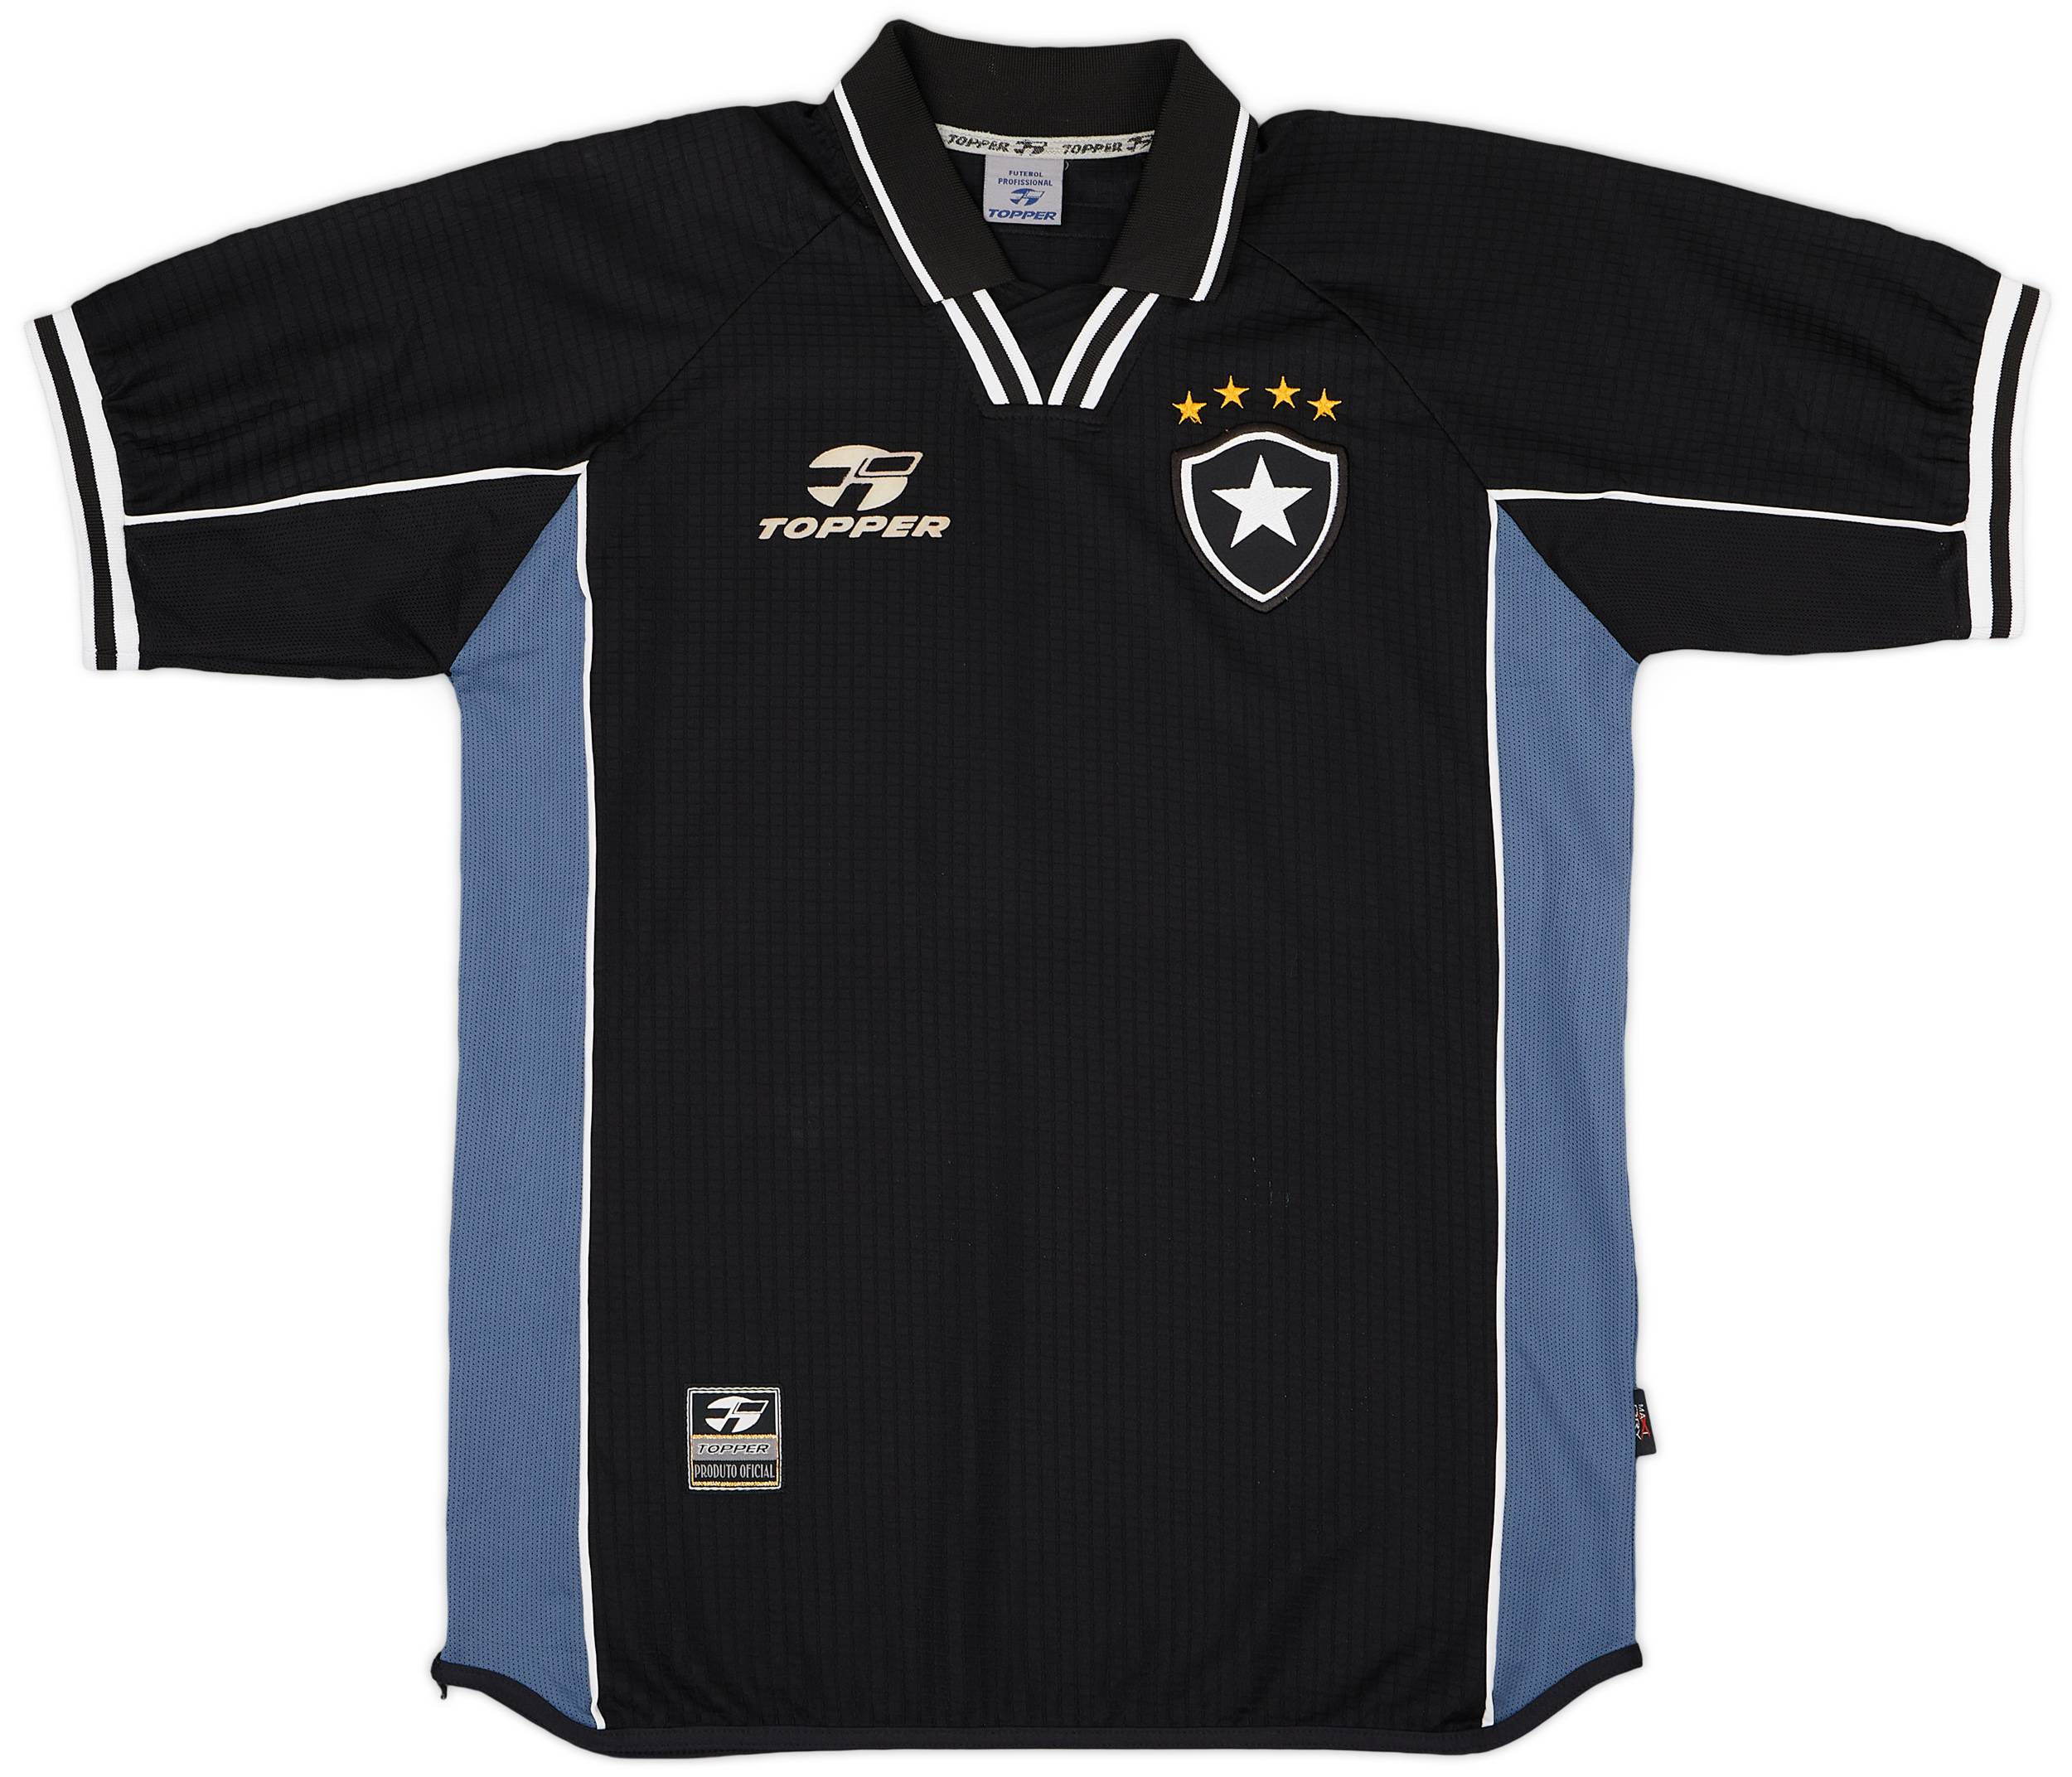 2000-02 Botafogo Away Shirt - 10/10 - (XL)